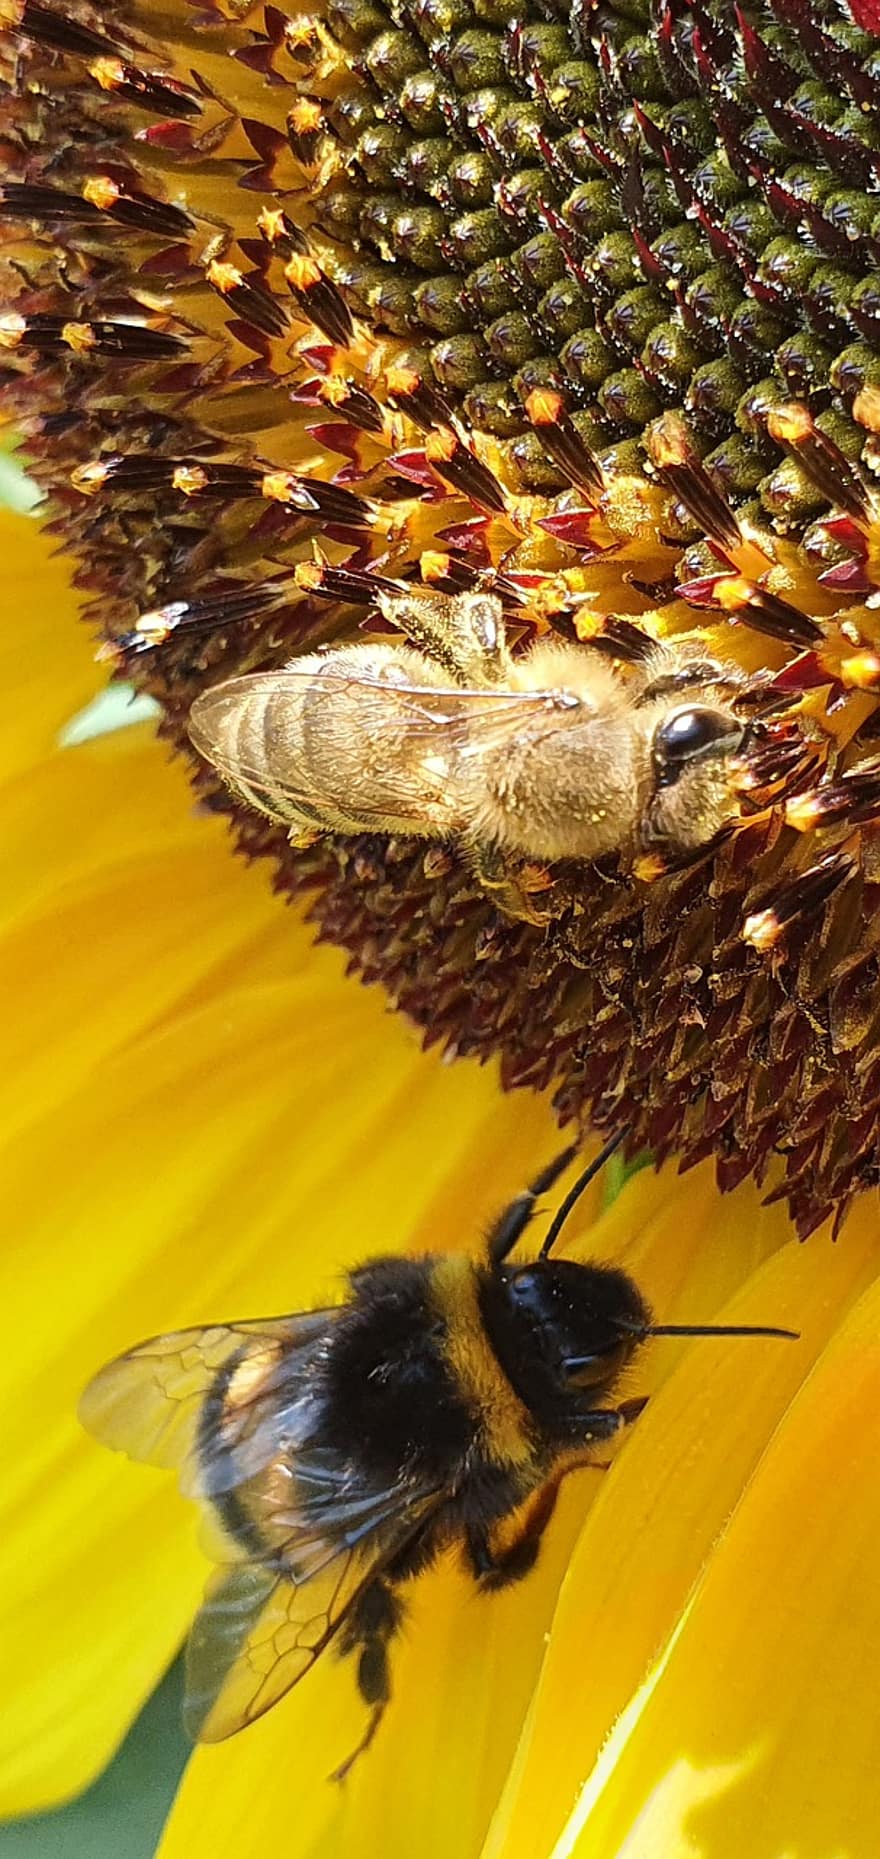 hoa hướng dương, những con ong, bông hoa, con ong, quả bom, ong mật, apis, côn trùng, màu vàng